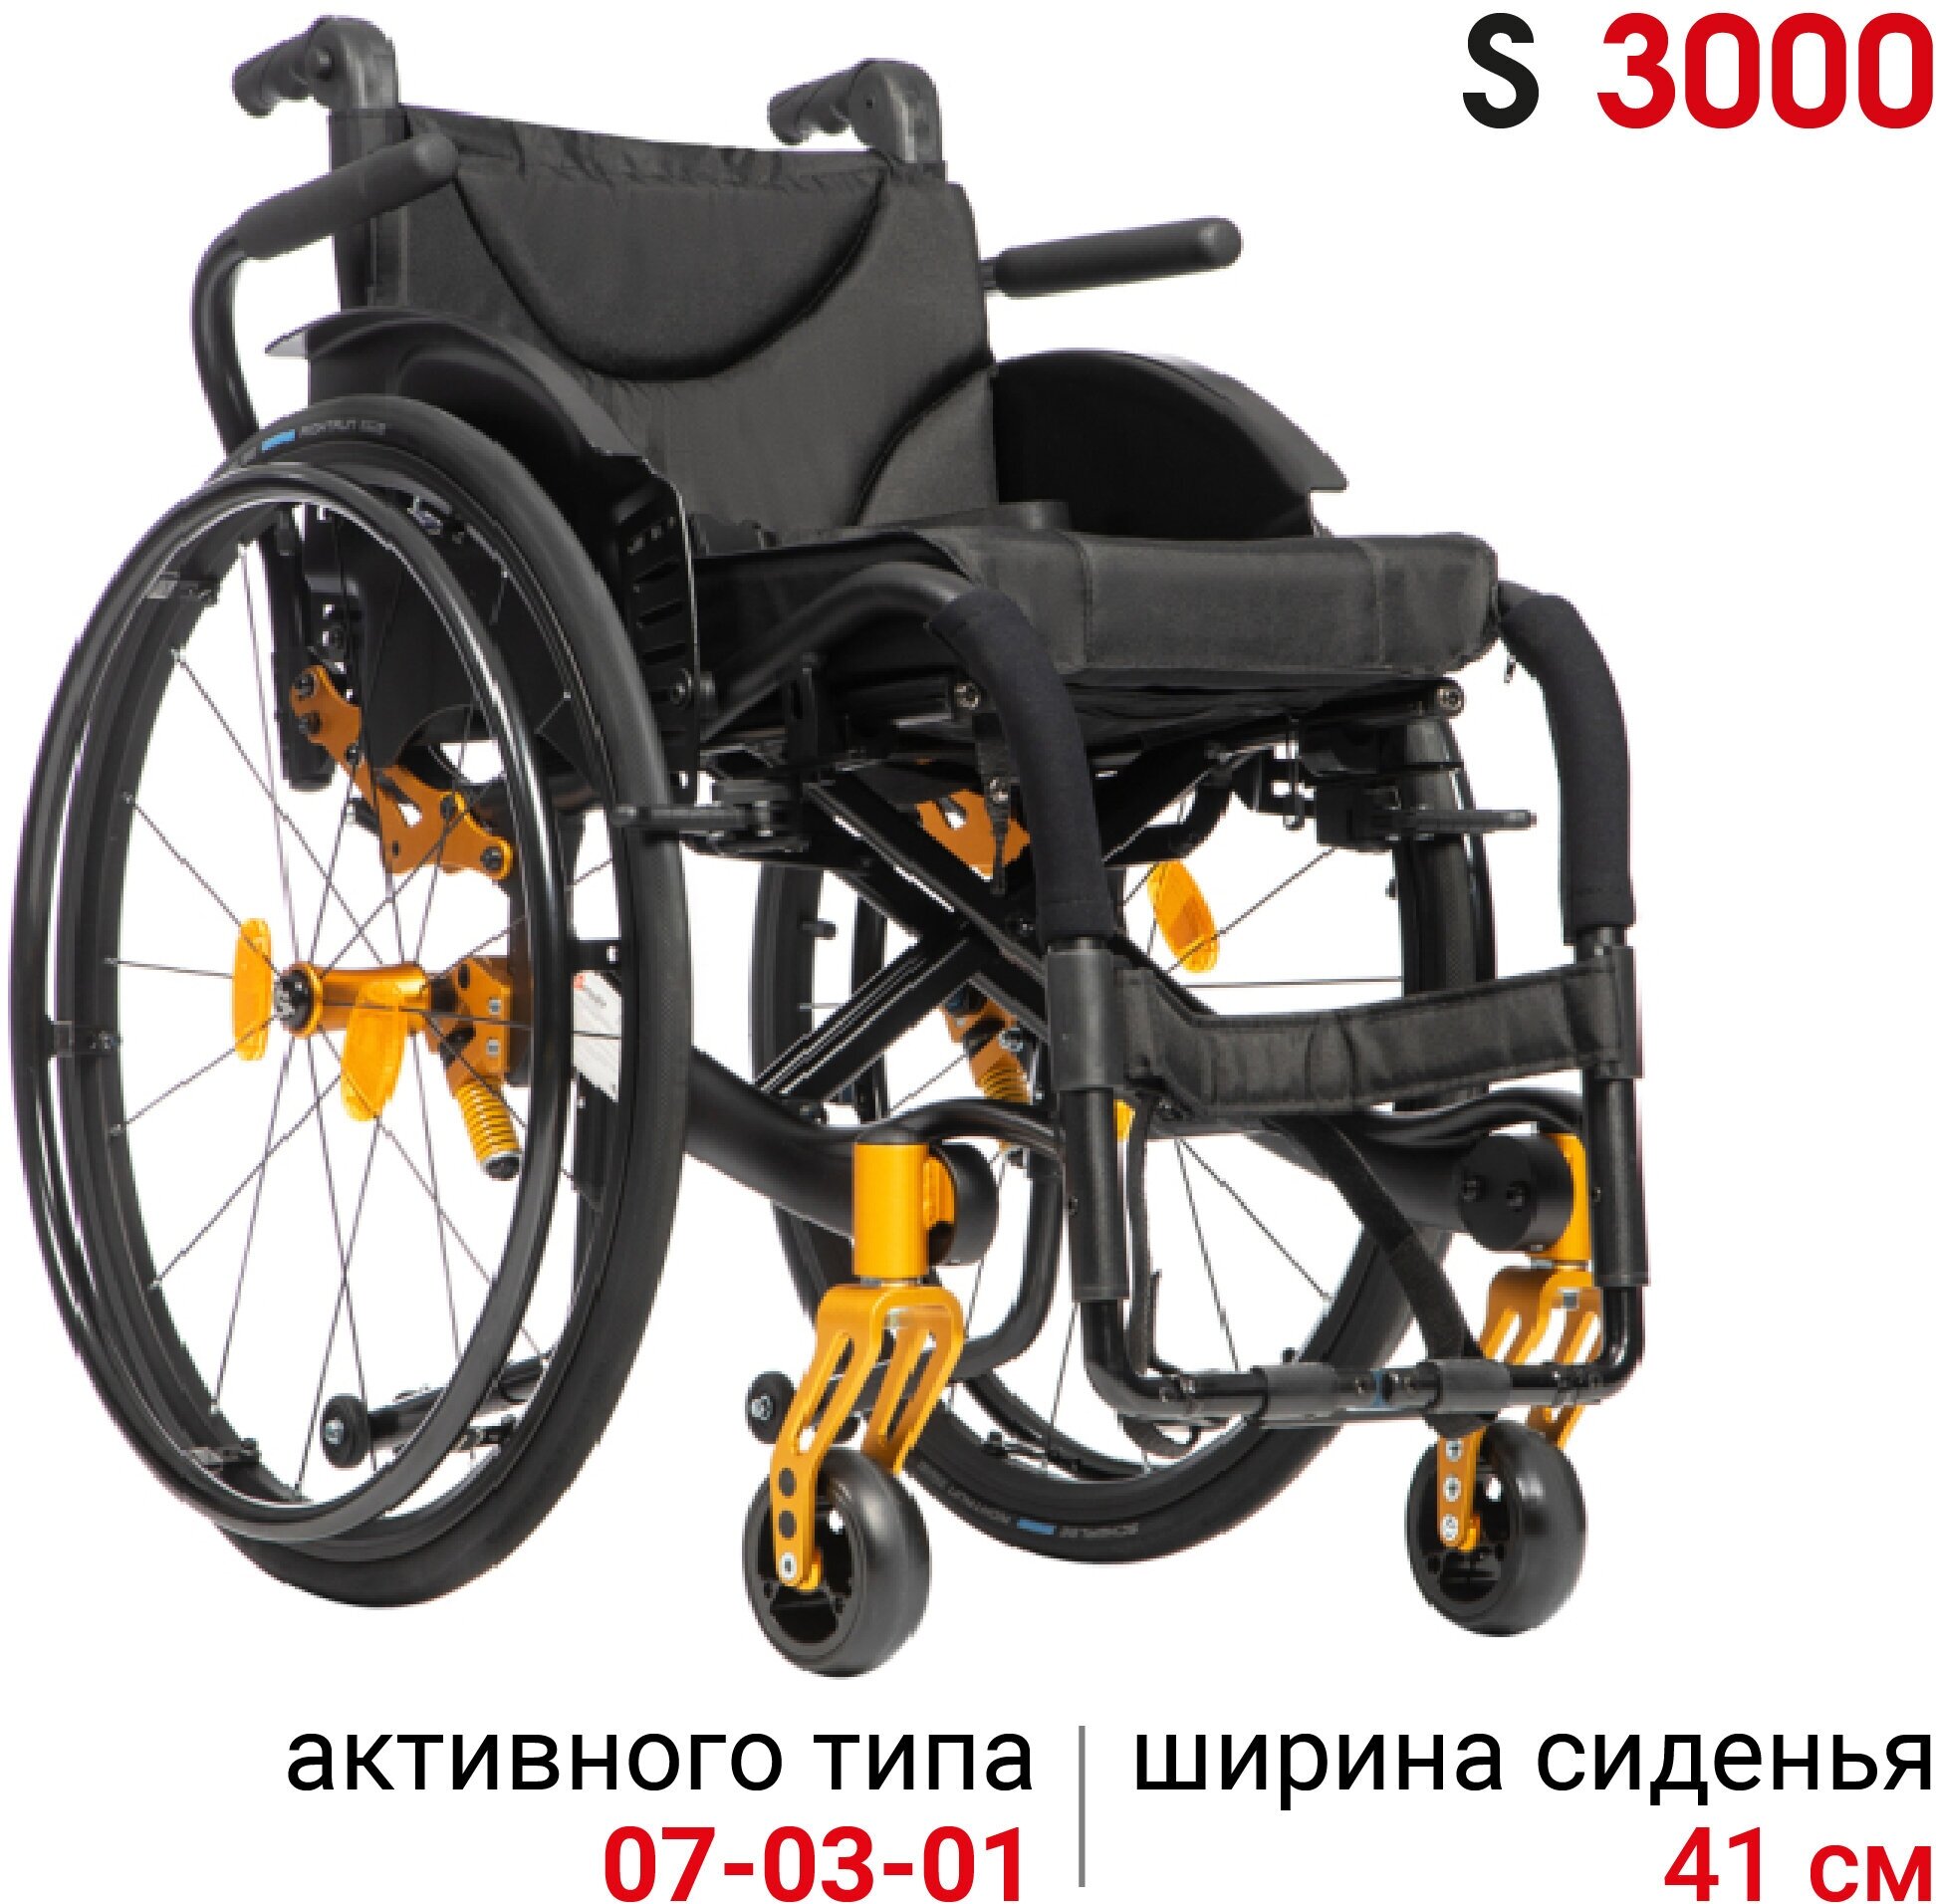 Кресло-коляска активная механическая Ortonica S 3000 41PU RR складная легкая ширина сиденья 41 см шины Schwalbe RightRun